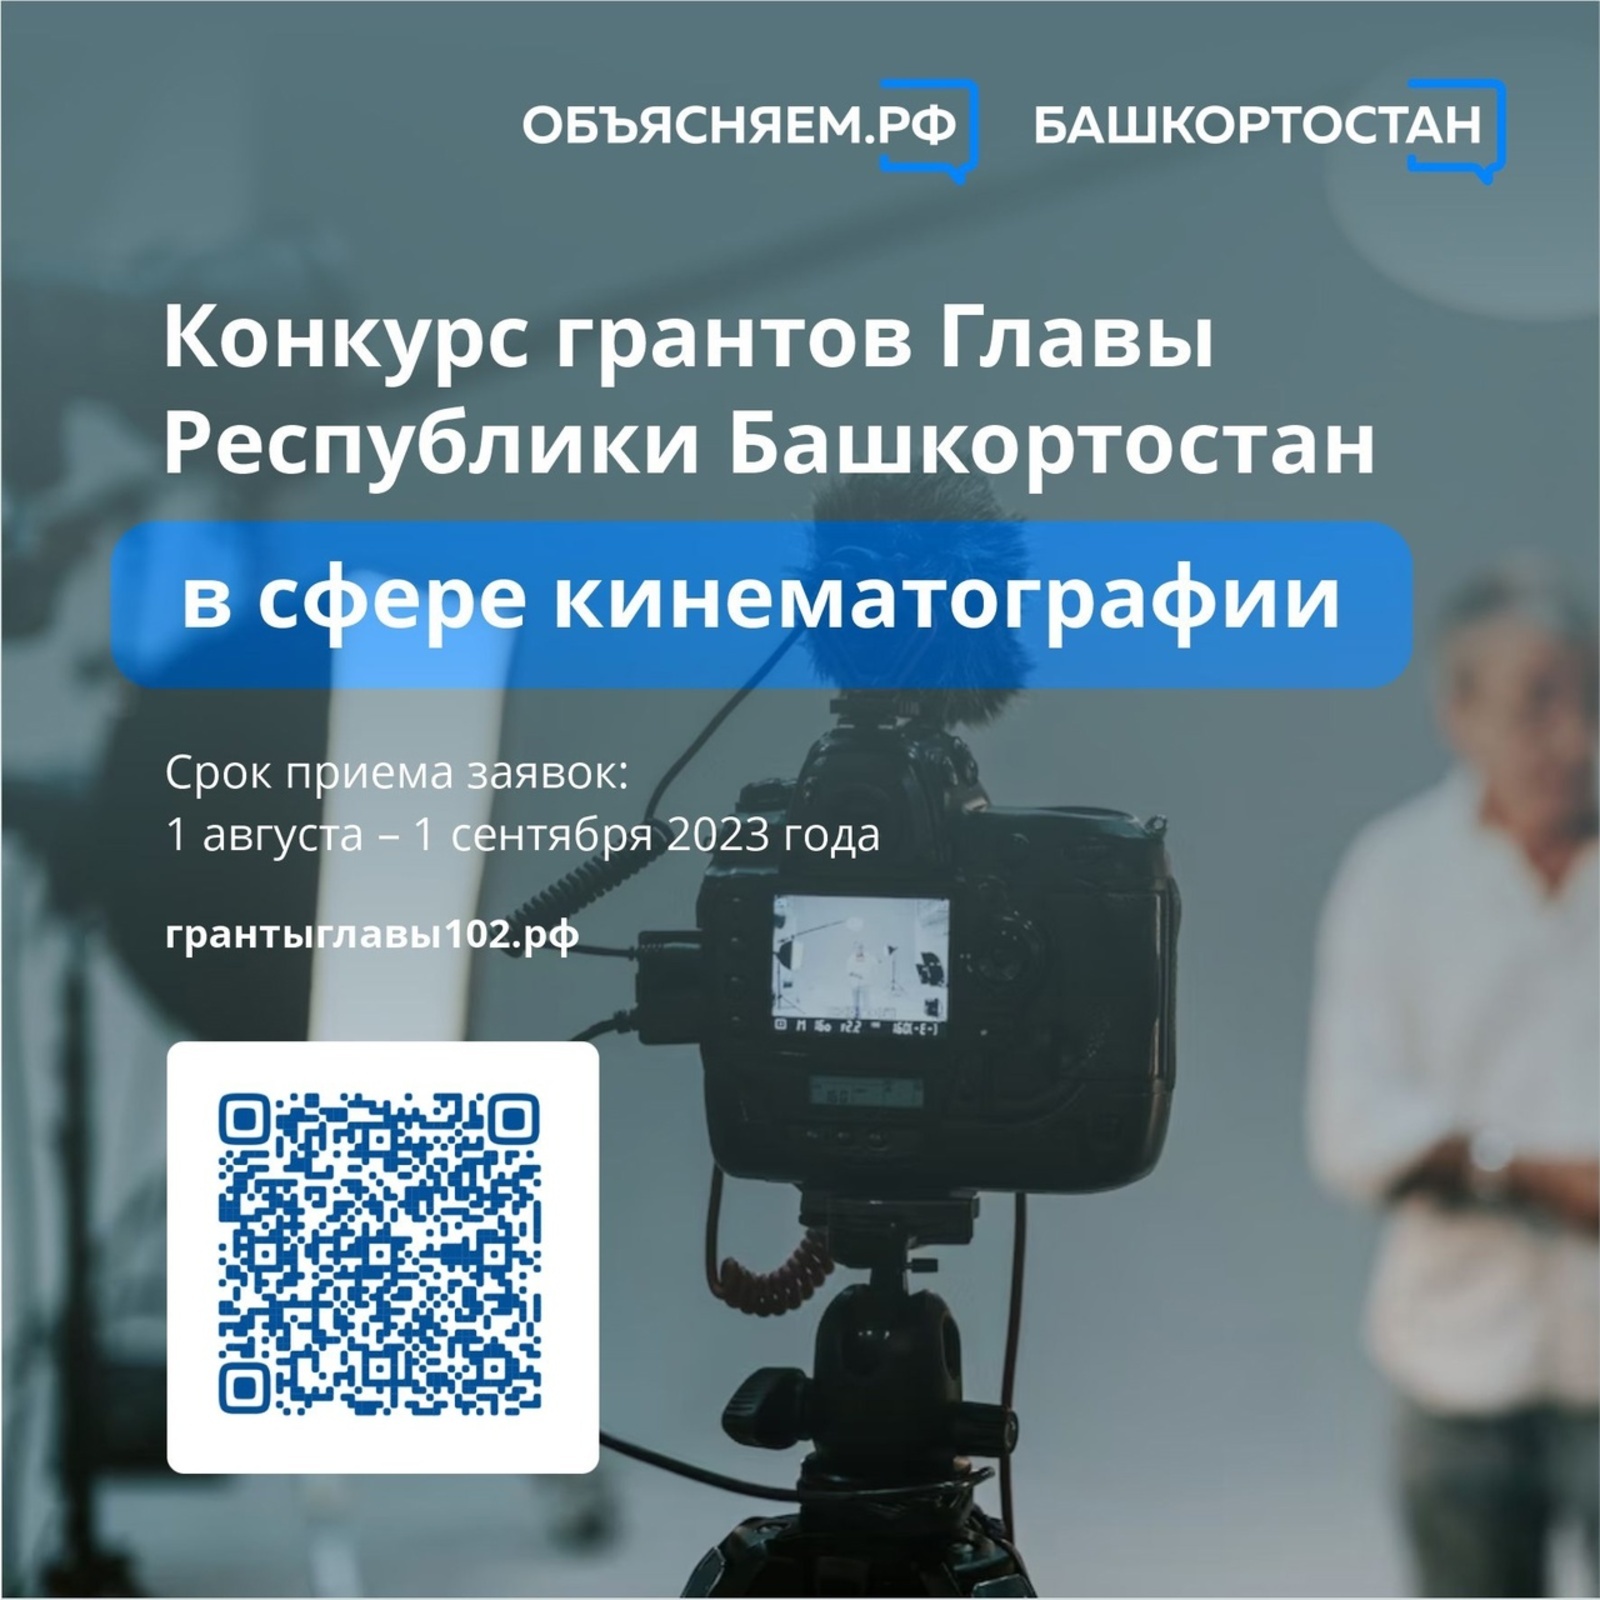 В поддержку проектов в сфере кинематографии в Башкортостане проведут конкурс грантов Главы республики, срок приема заявок: 1 августа – 1 сентября 2023 года.